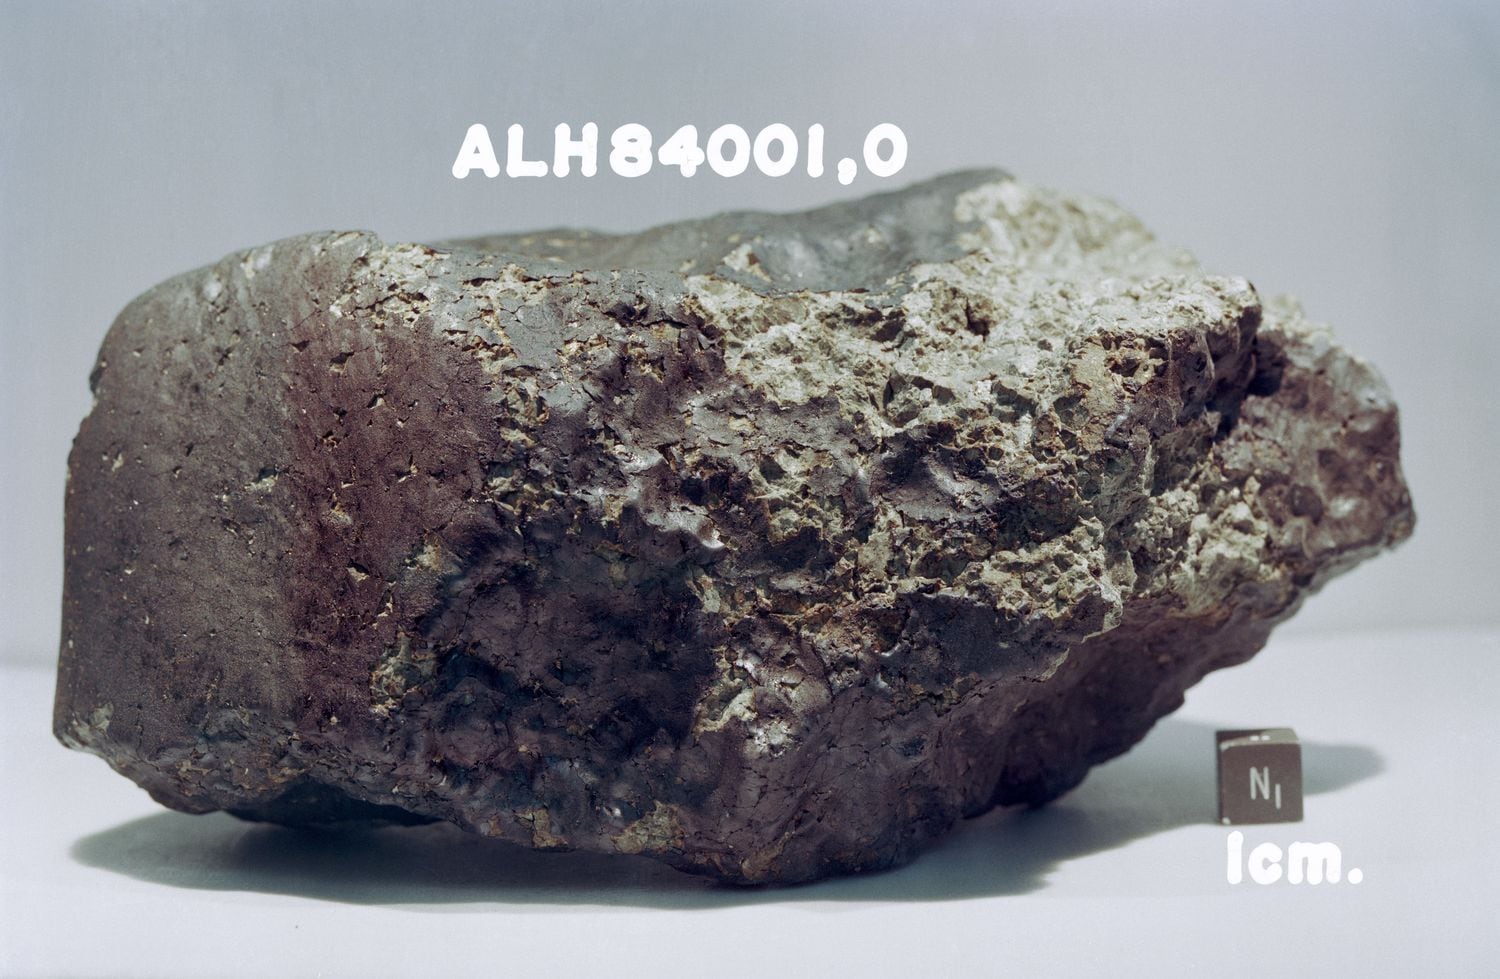 O meteorito ALH84001, em que se pensou que teriam sido encontrados indícios de vida marciana.